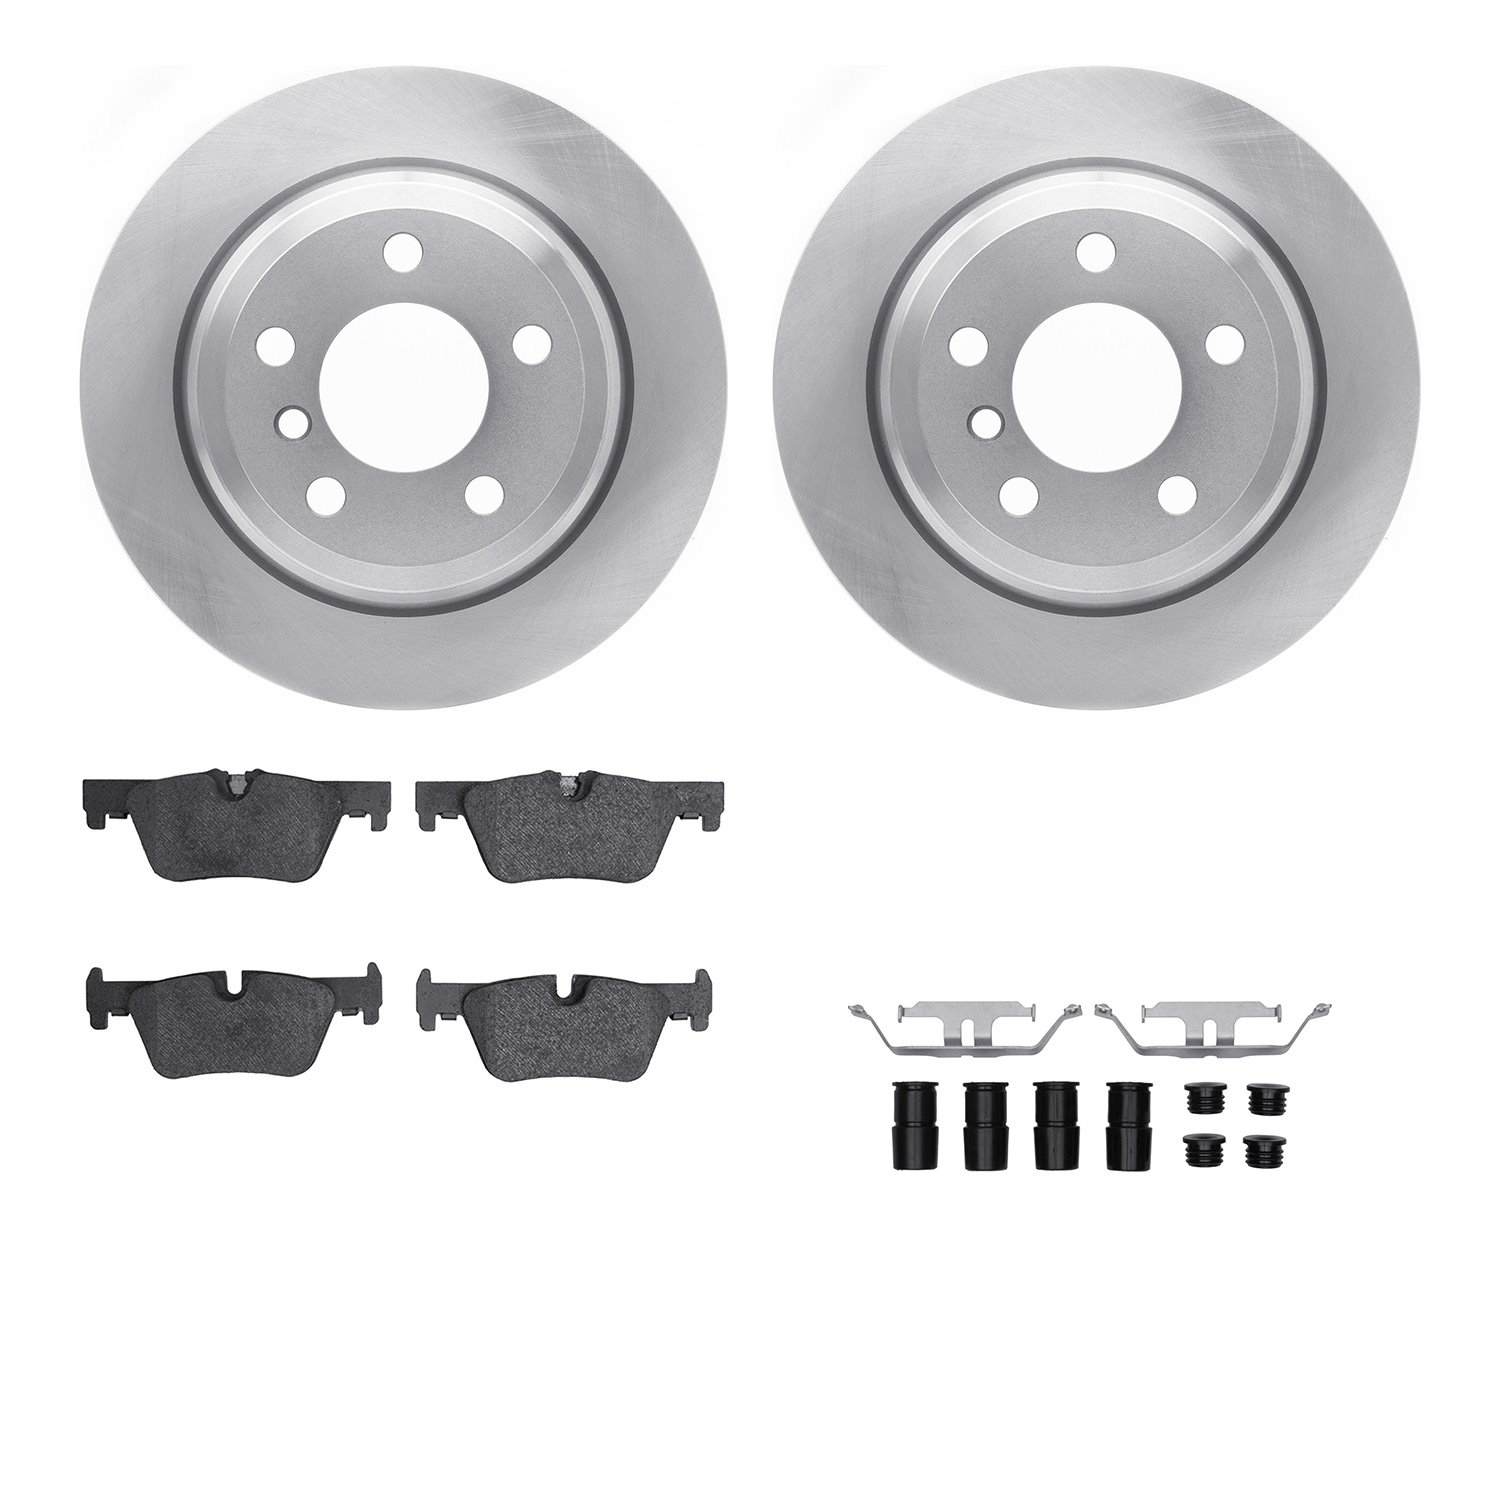 6612-31408 Brake Rotors w/5000 Euro Ceramic Brake Pads Kit with Hardware, 2013-2020 BMW, Position: Rear